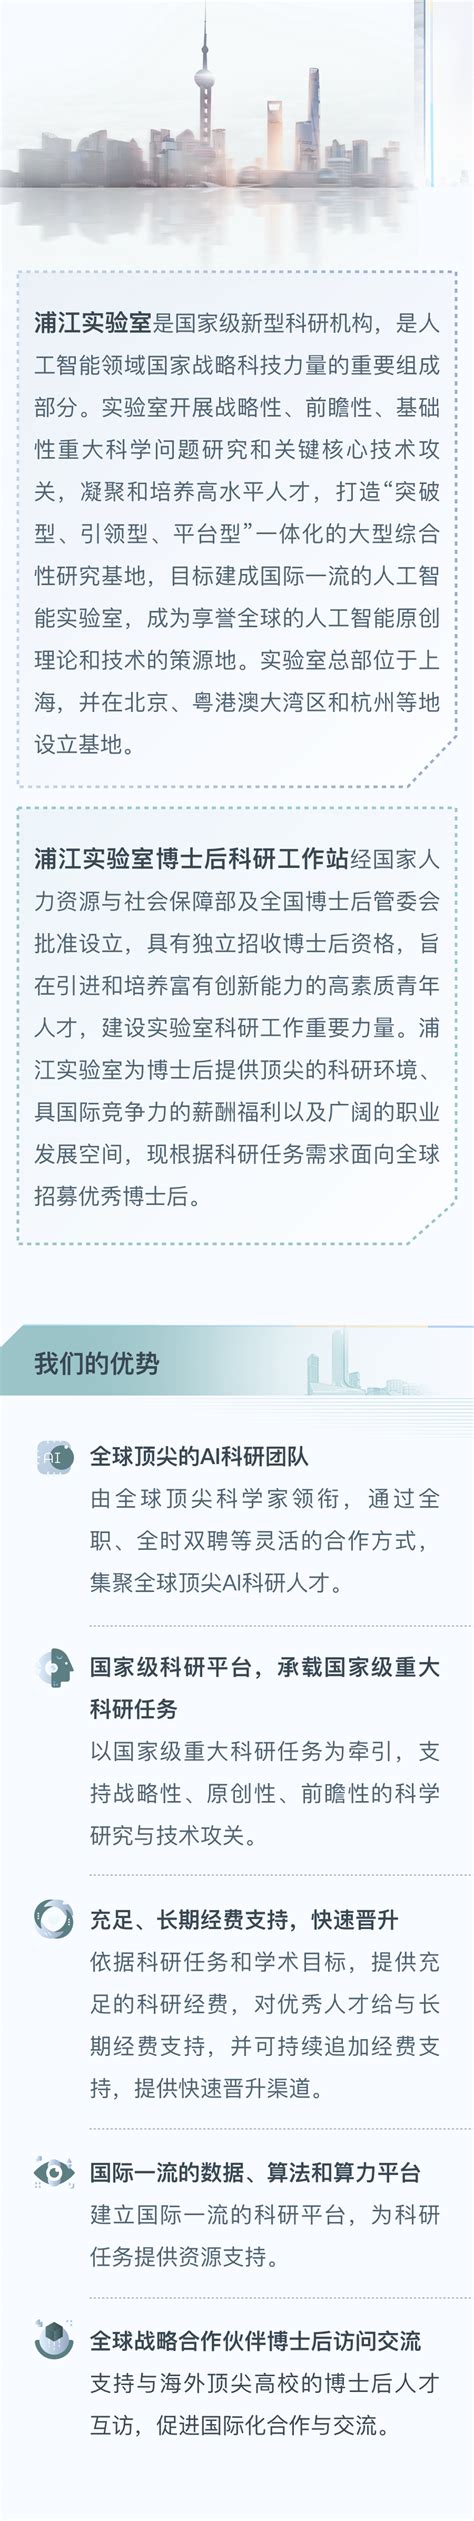 浦江附近招聘 信息推荐「义乌市恒信人才供应」 - 水专家B2B